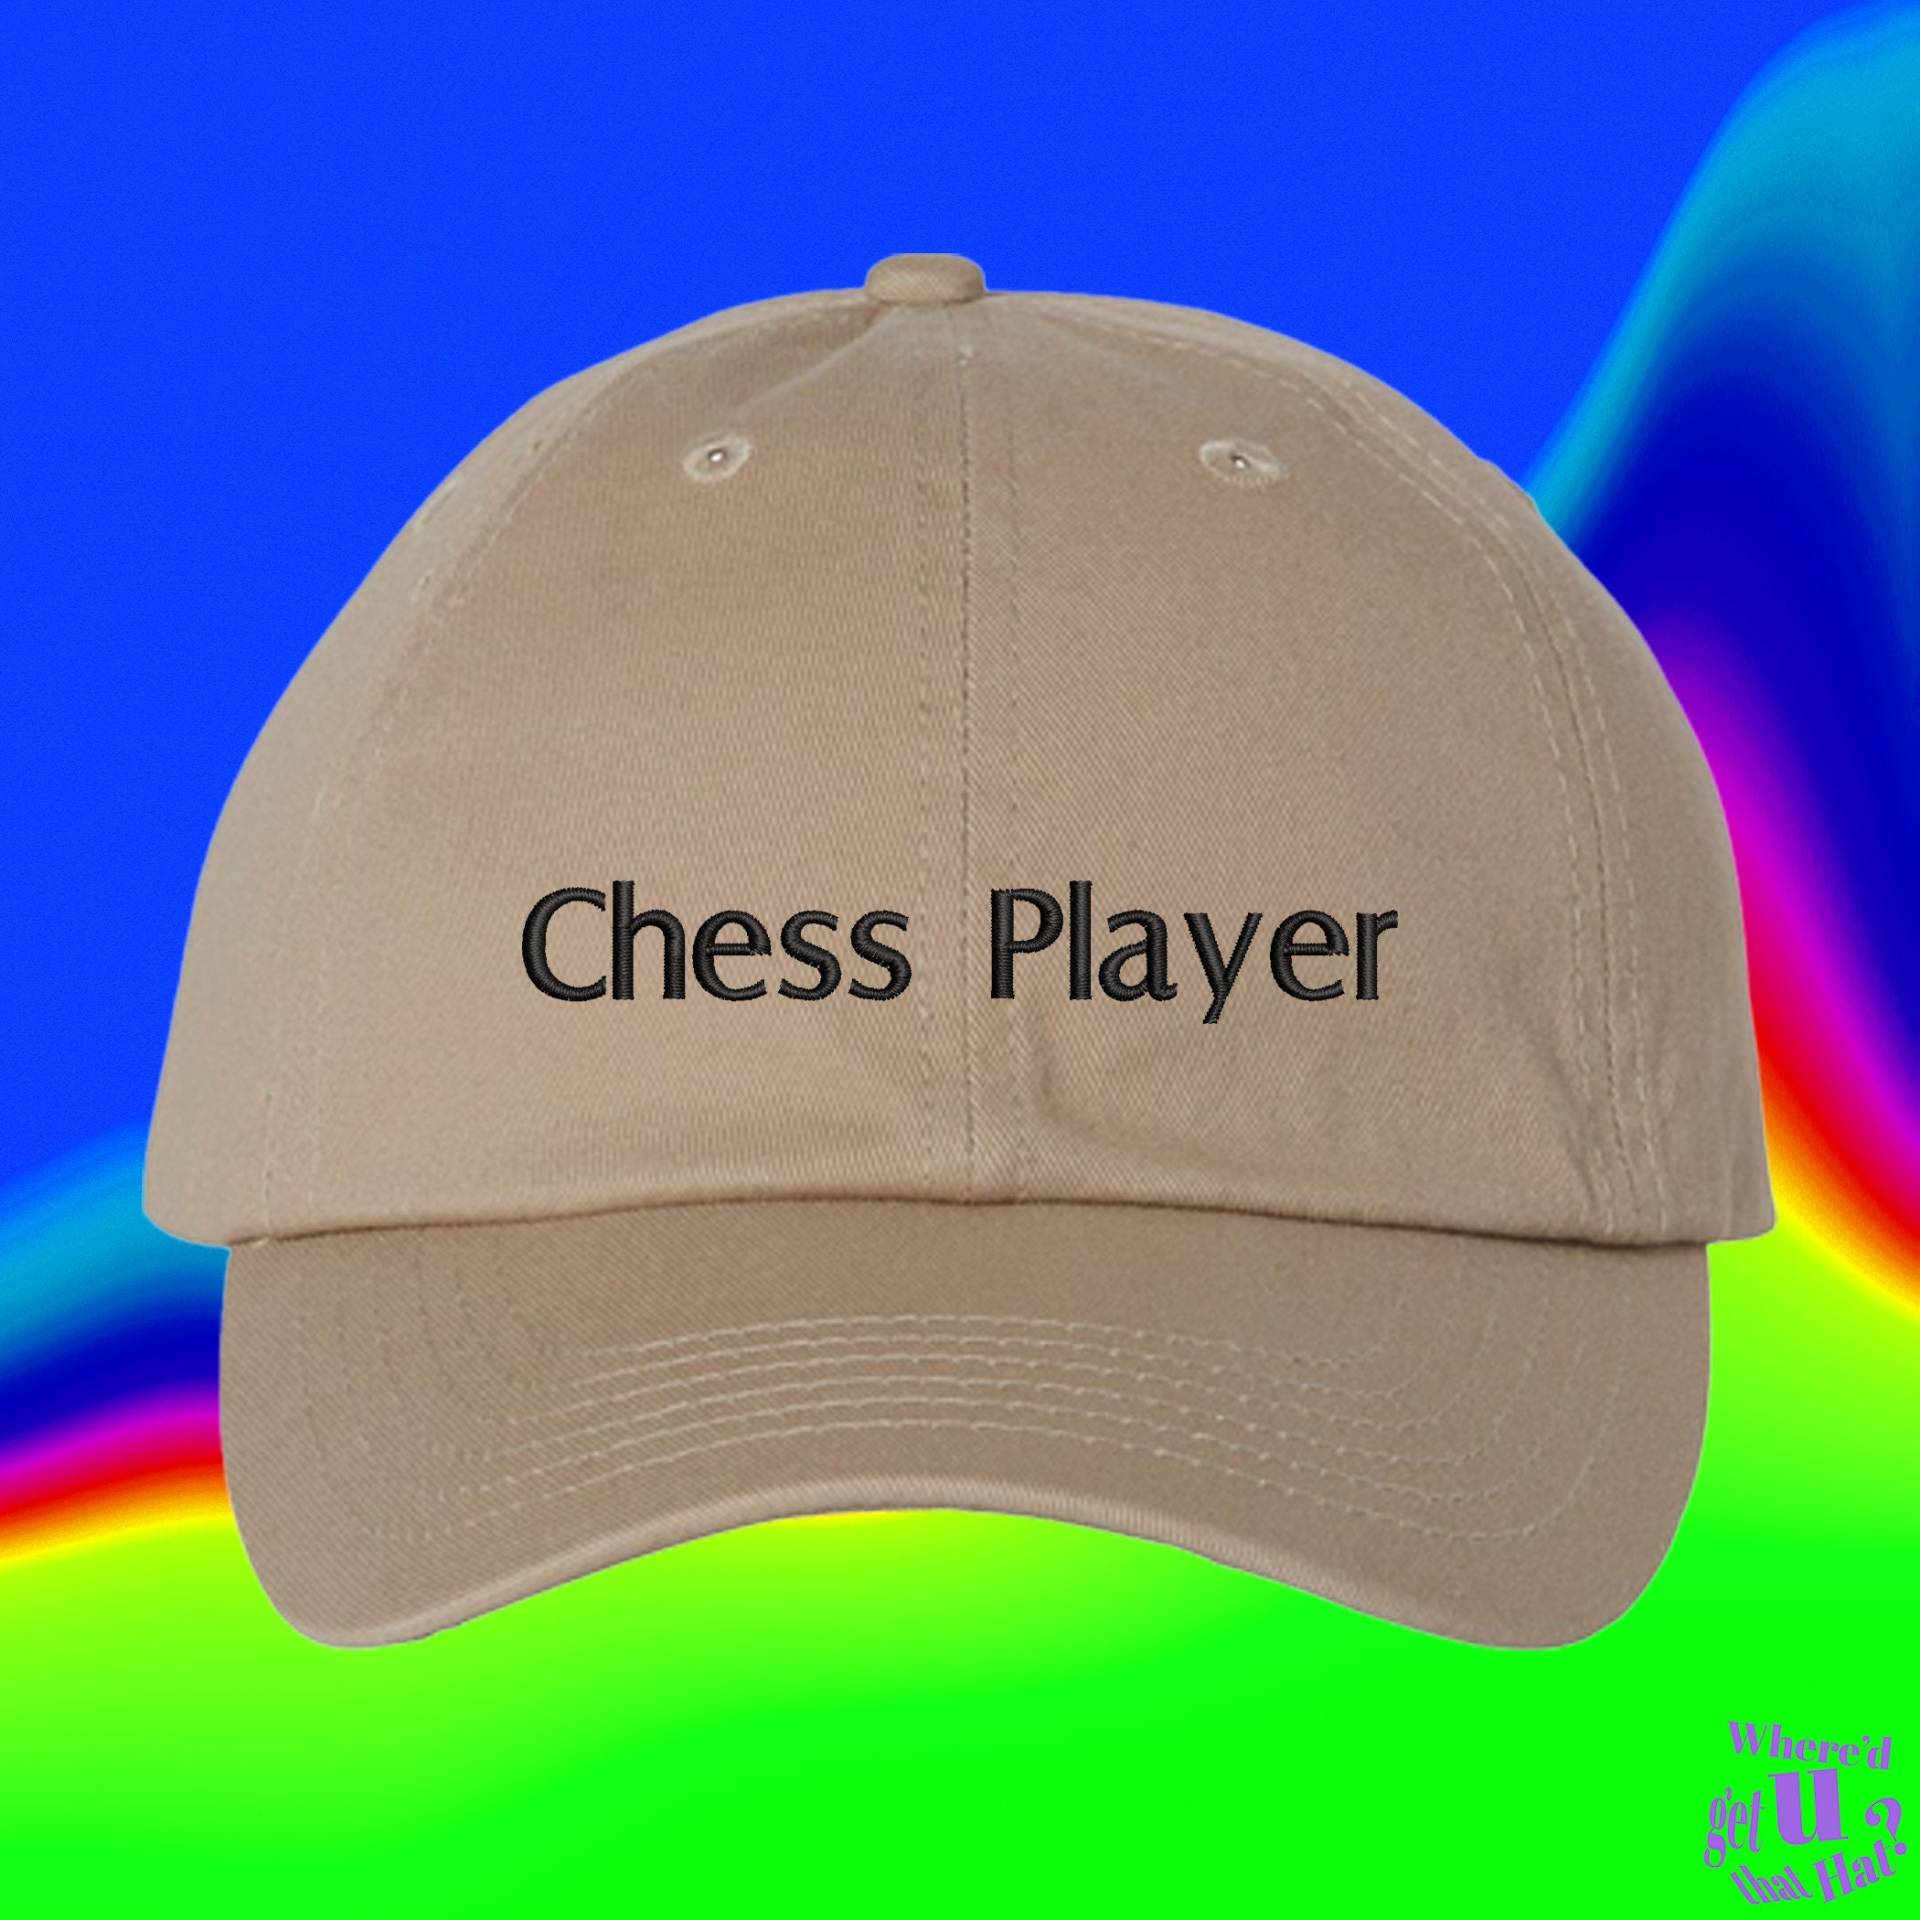 Schachspieler Hut | Schach Spieler Geschenk Chackmate Schachliebhaber Benutzerdefinierte Farbverstellbare Gestickte Dad-Hut von WheredUGetThatHat